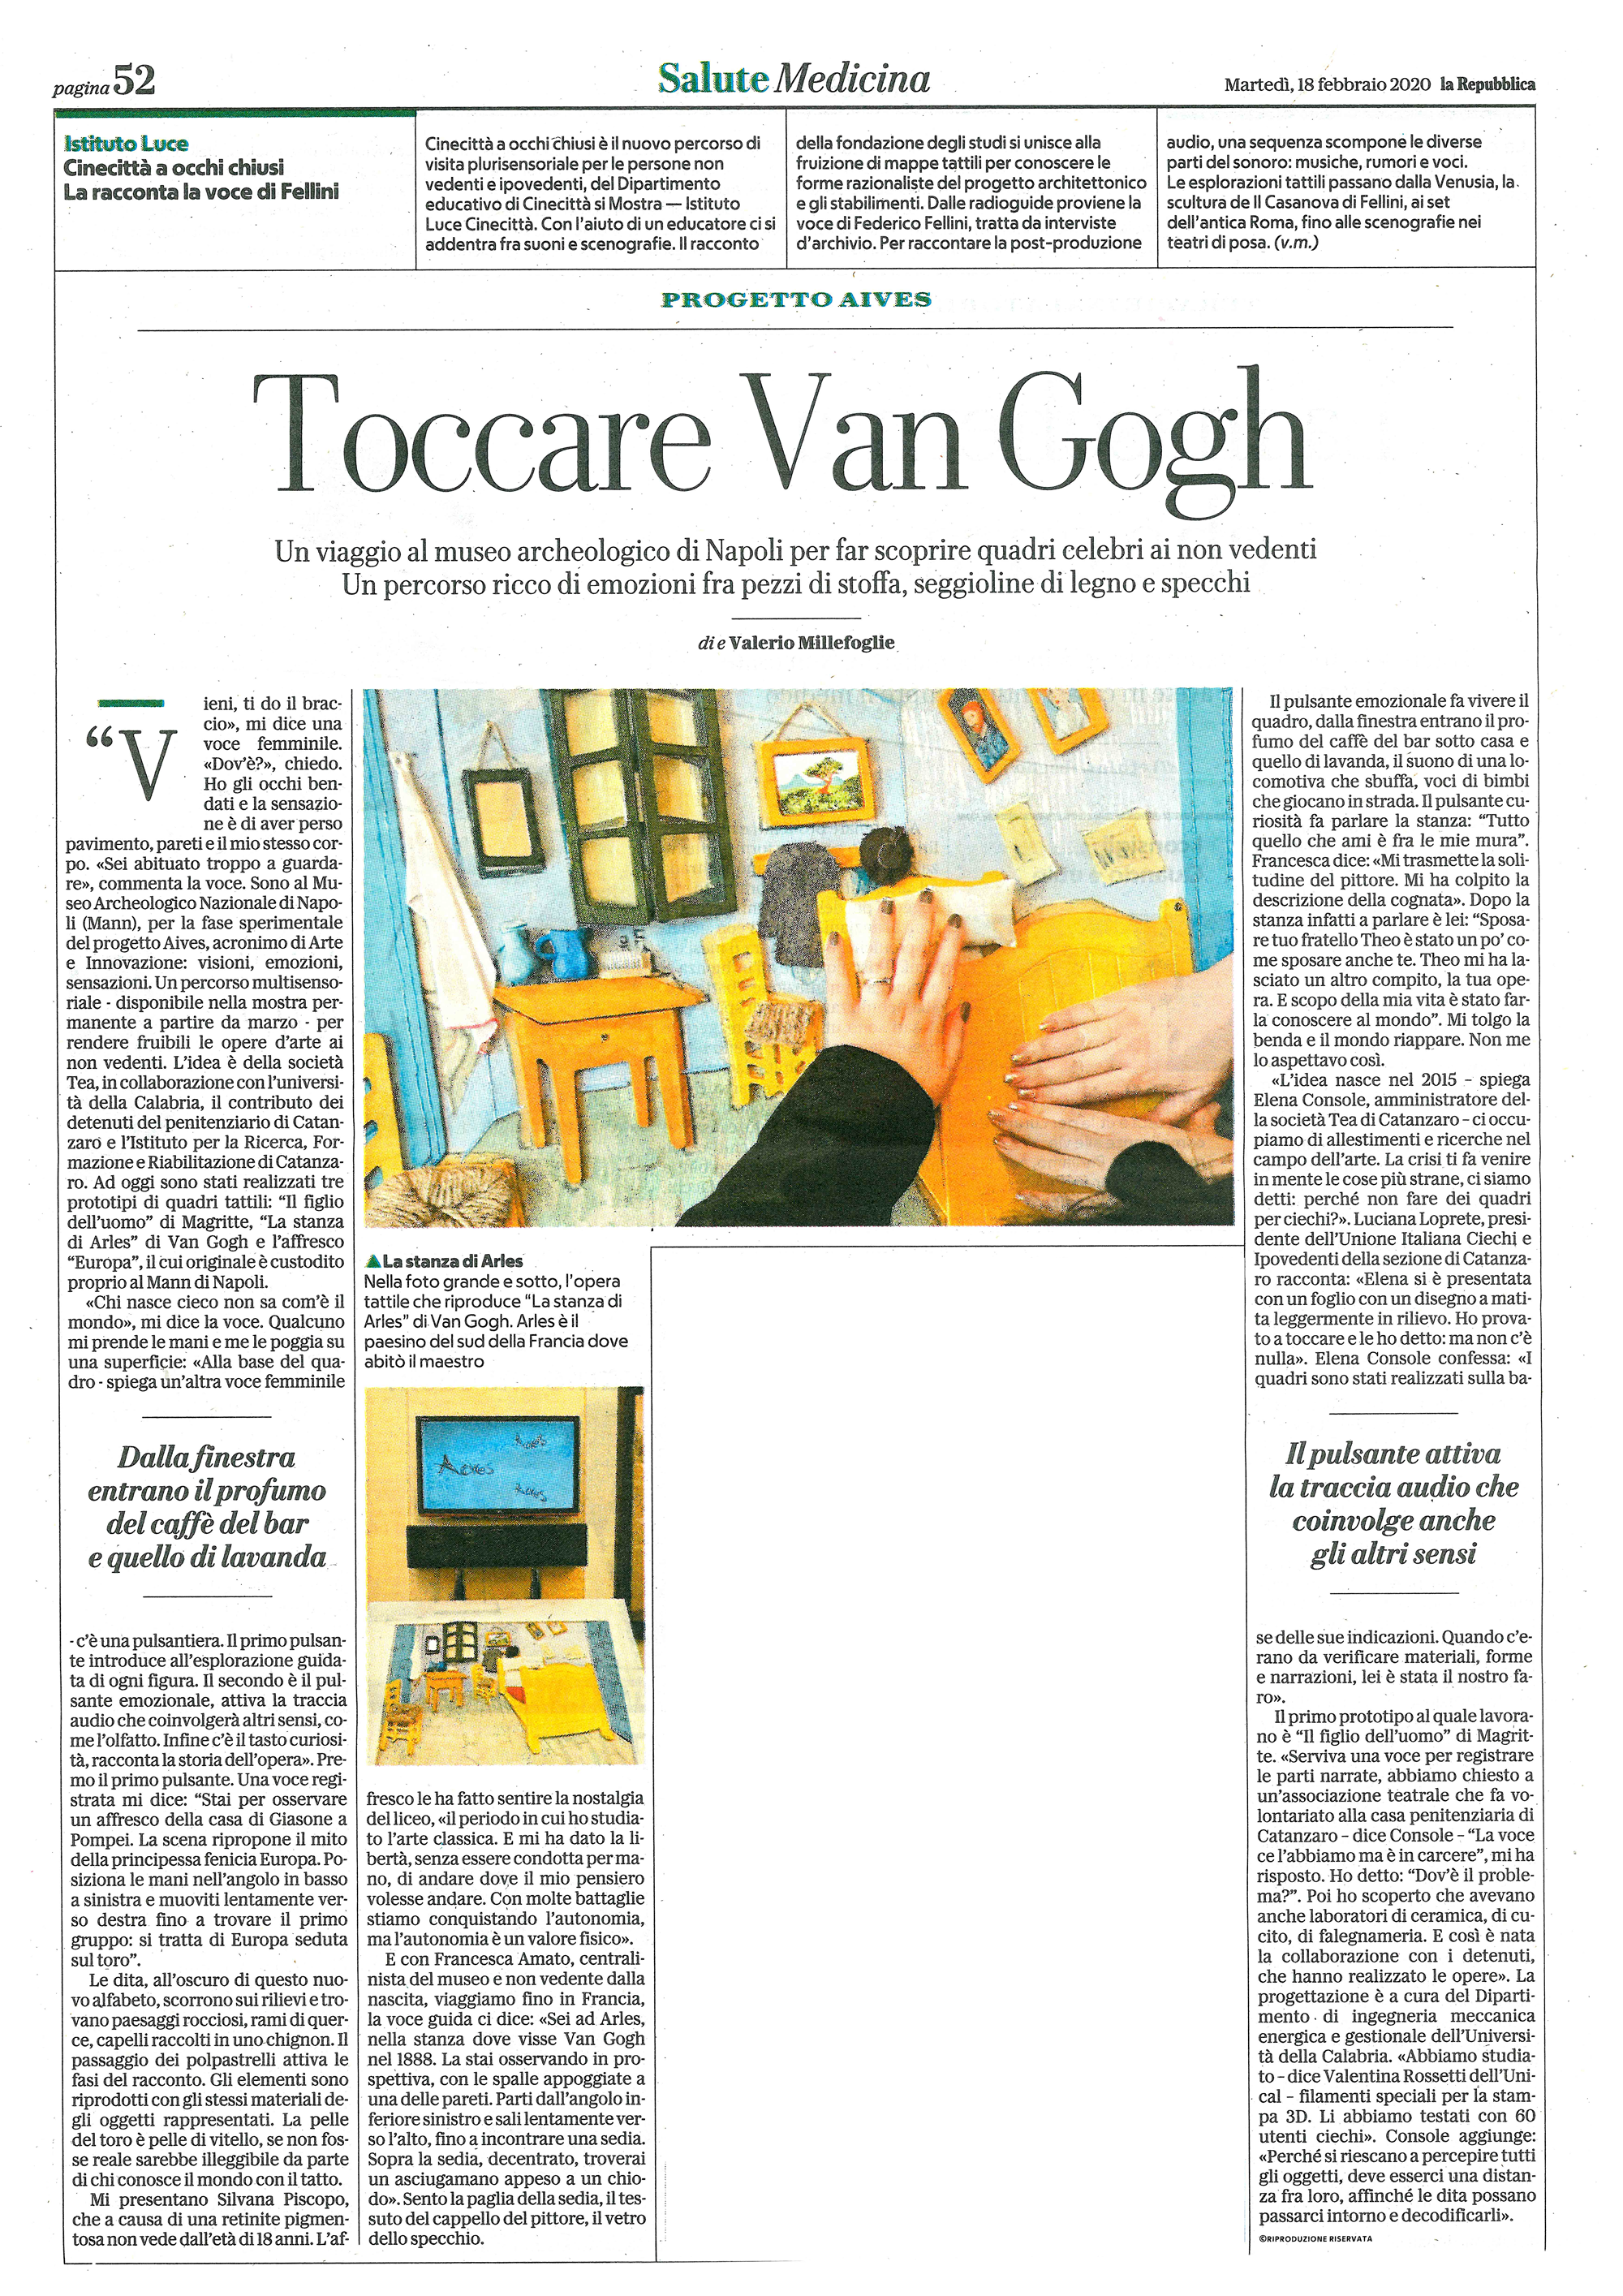 Articolo su Repubblica: Toccare Van Gogh